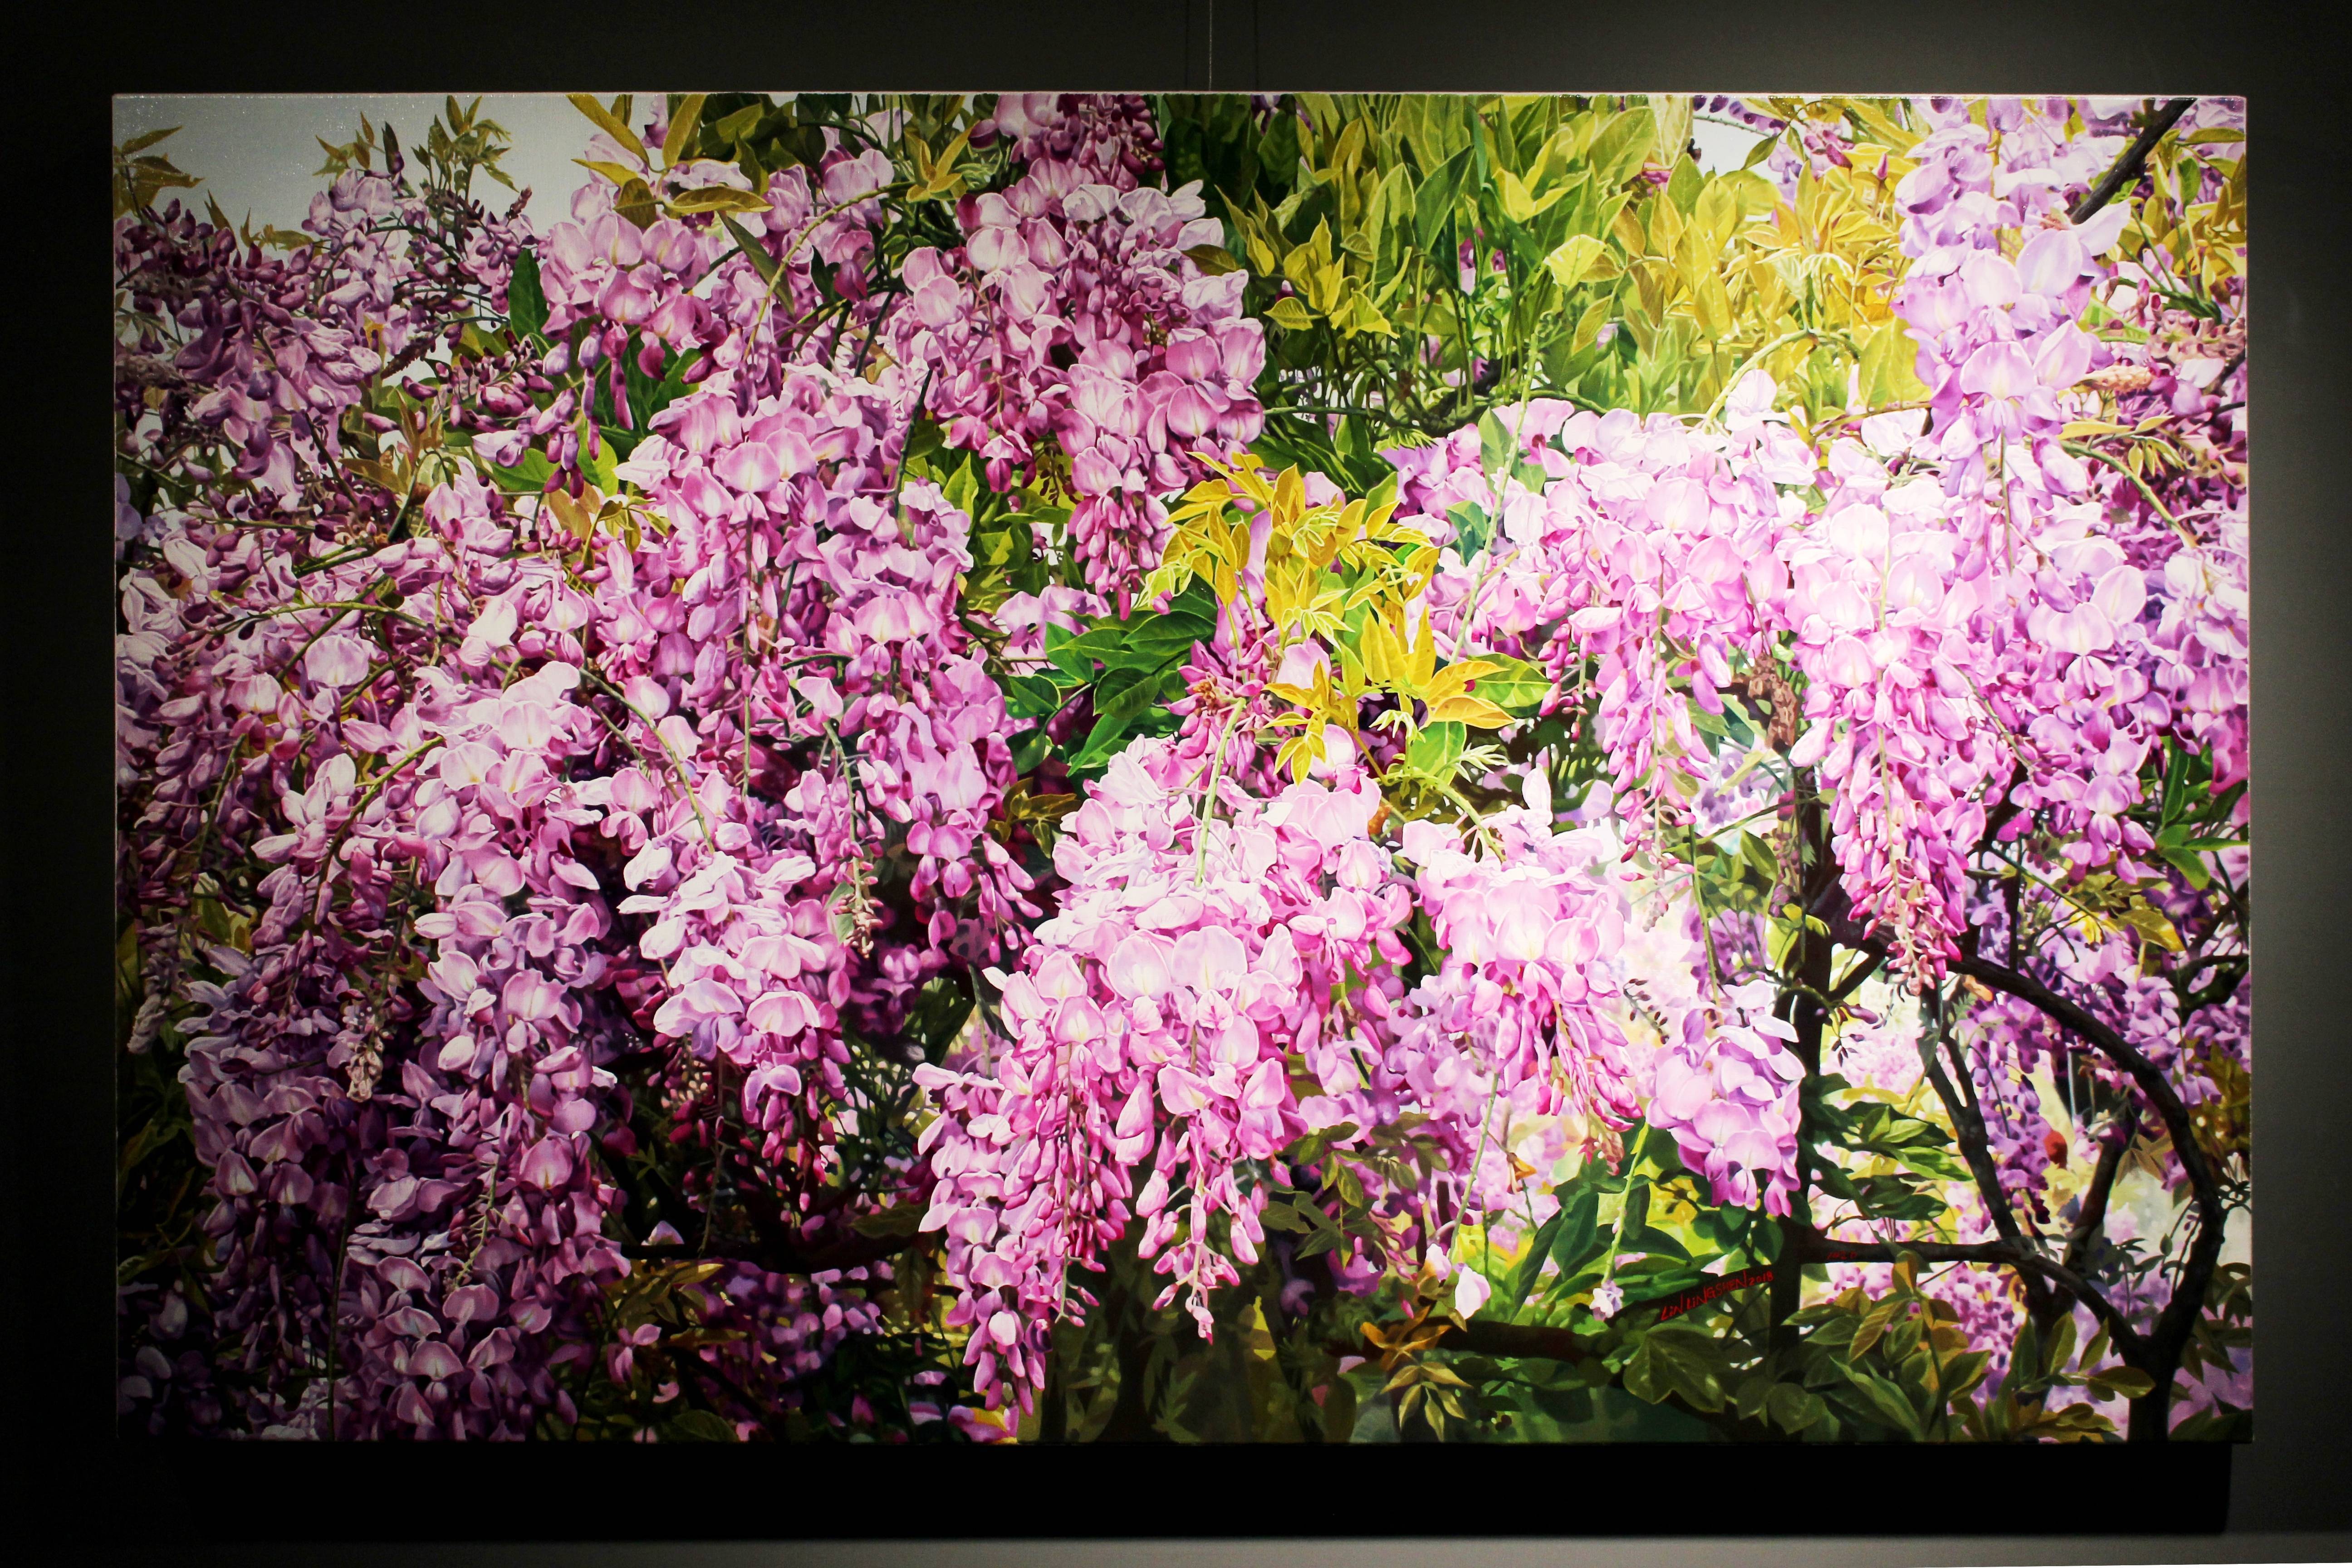 林嶺森，《紫瀑流瀉》，2018，72.5×116.5cm (50M)，油彩/畫布。 